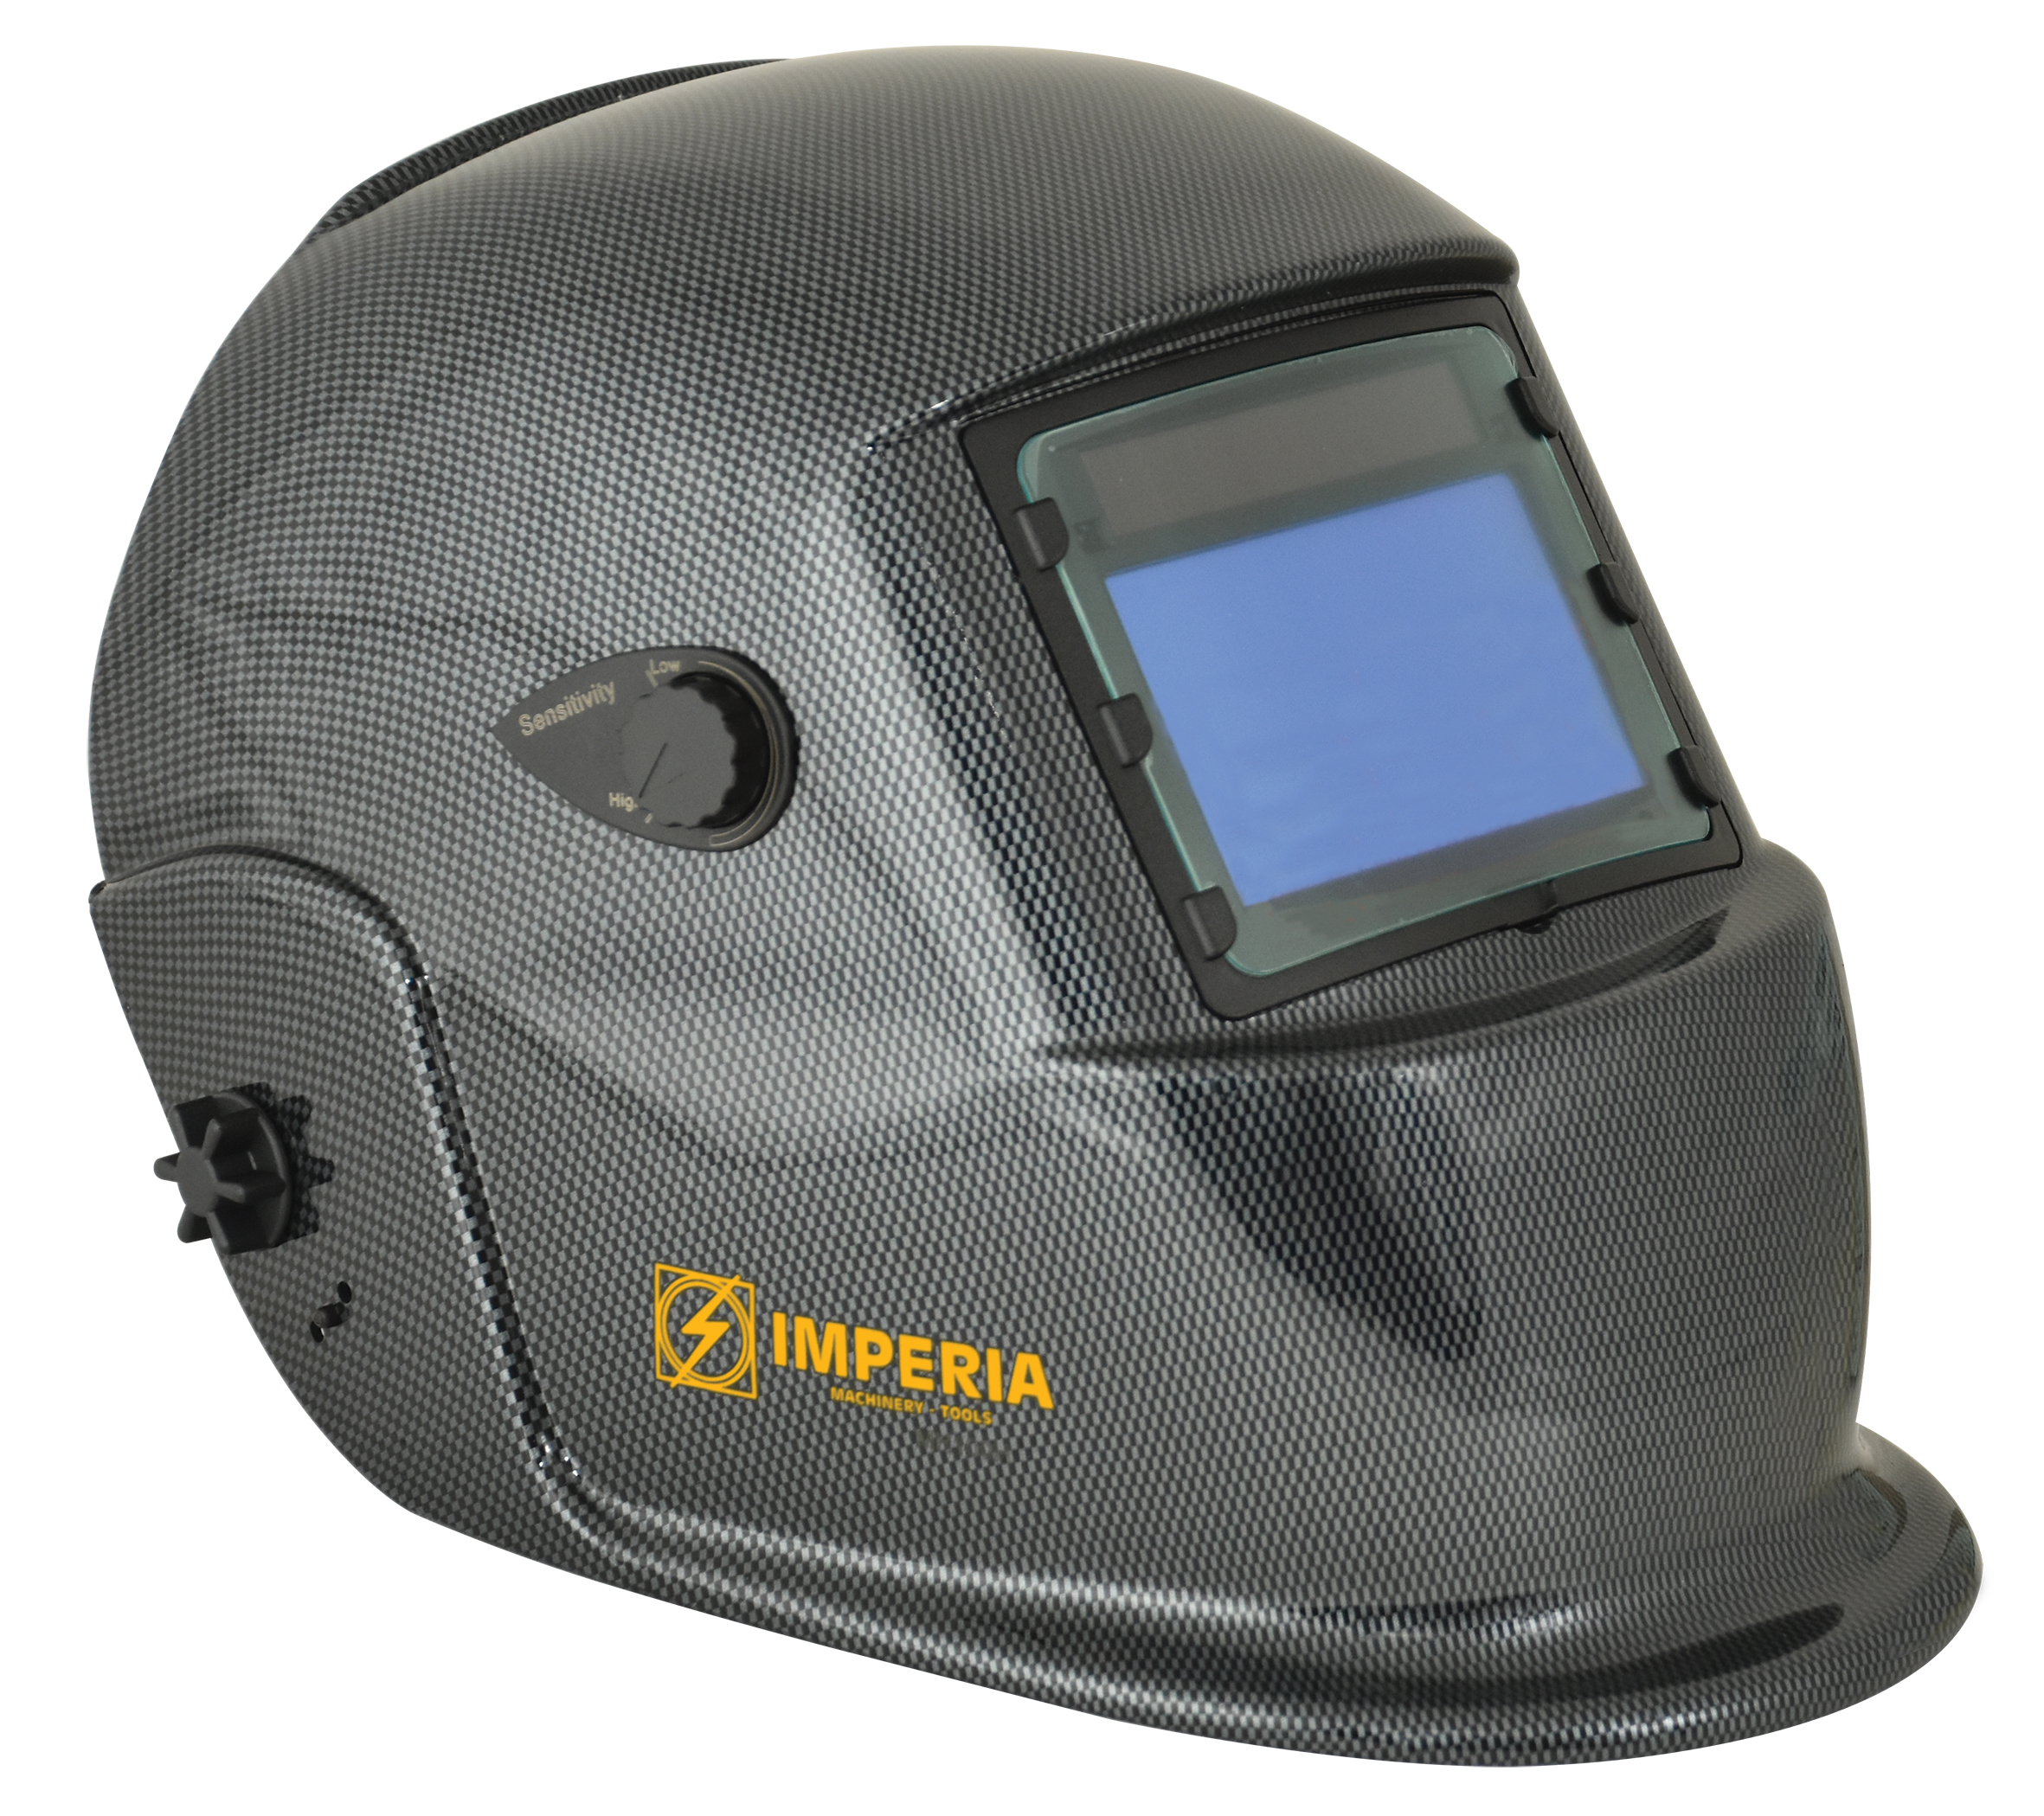 Μάσκα Ηλεκτροσυγκόλησης με Ηλεκτρονικό Φίλτρο - 98x55 mm Imperia - 1